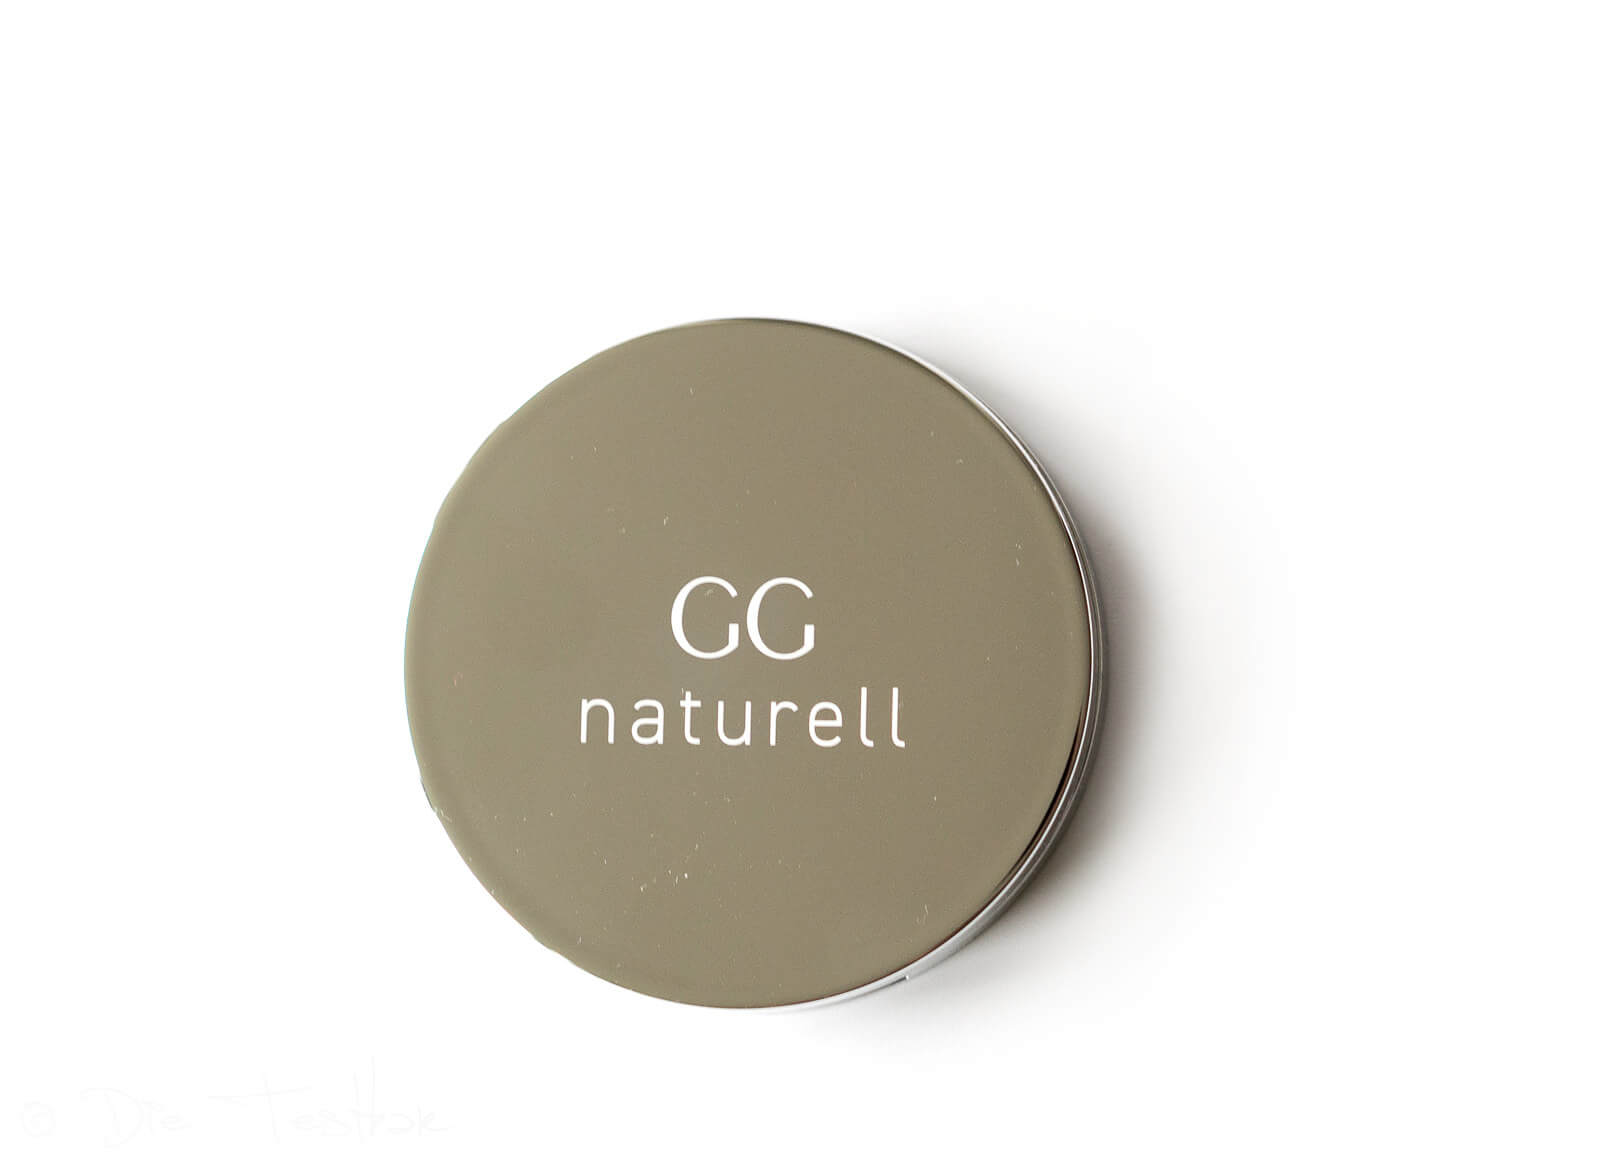 Ganzheitskosmetik - GG naturell - Hochwertige Kosmetik von Gertraud Gruber 10